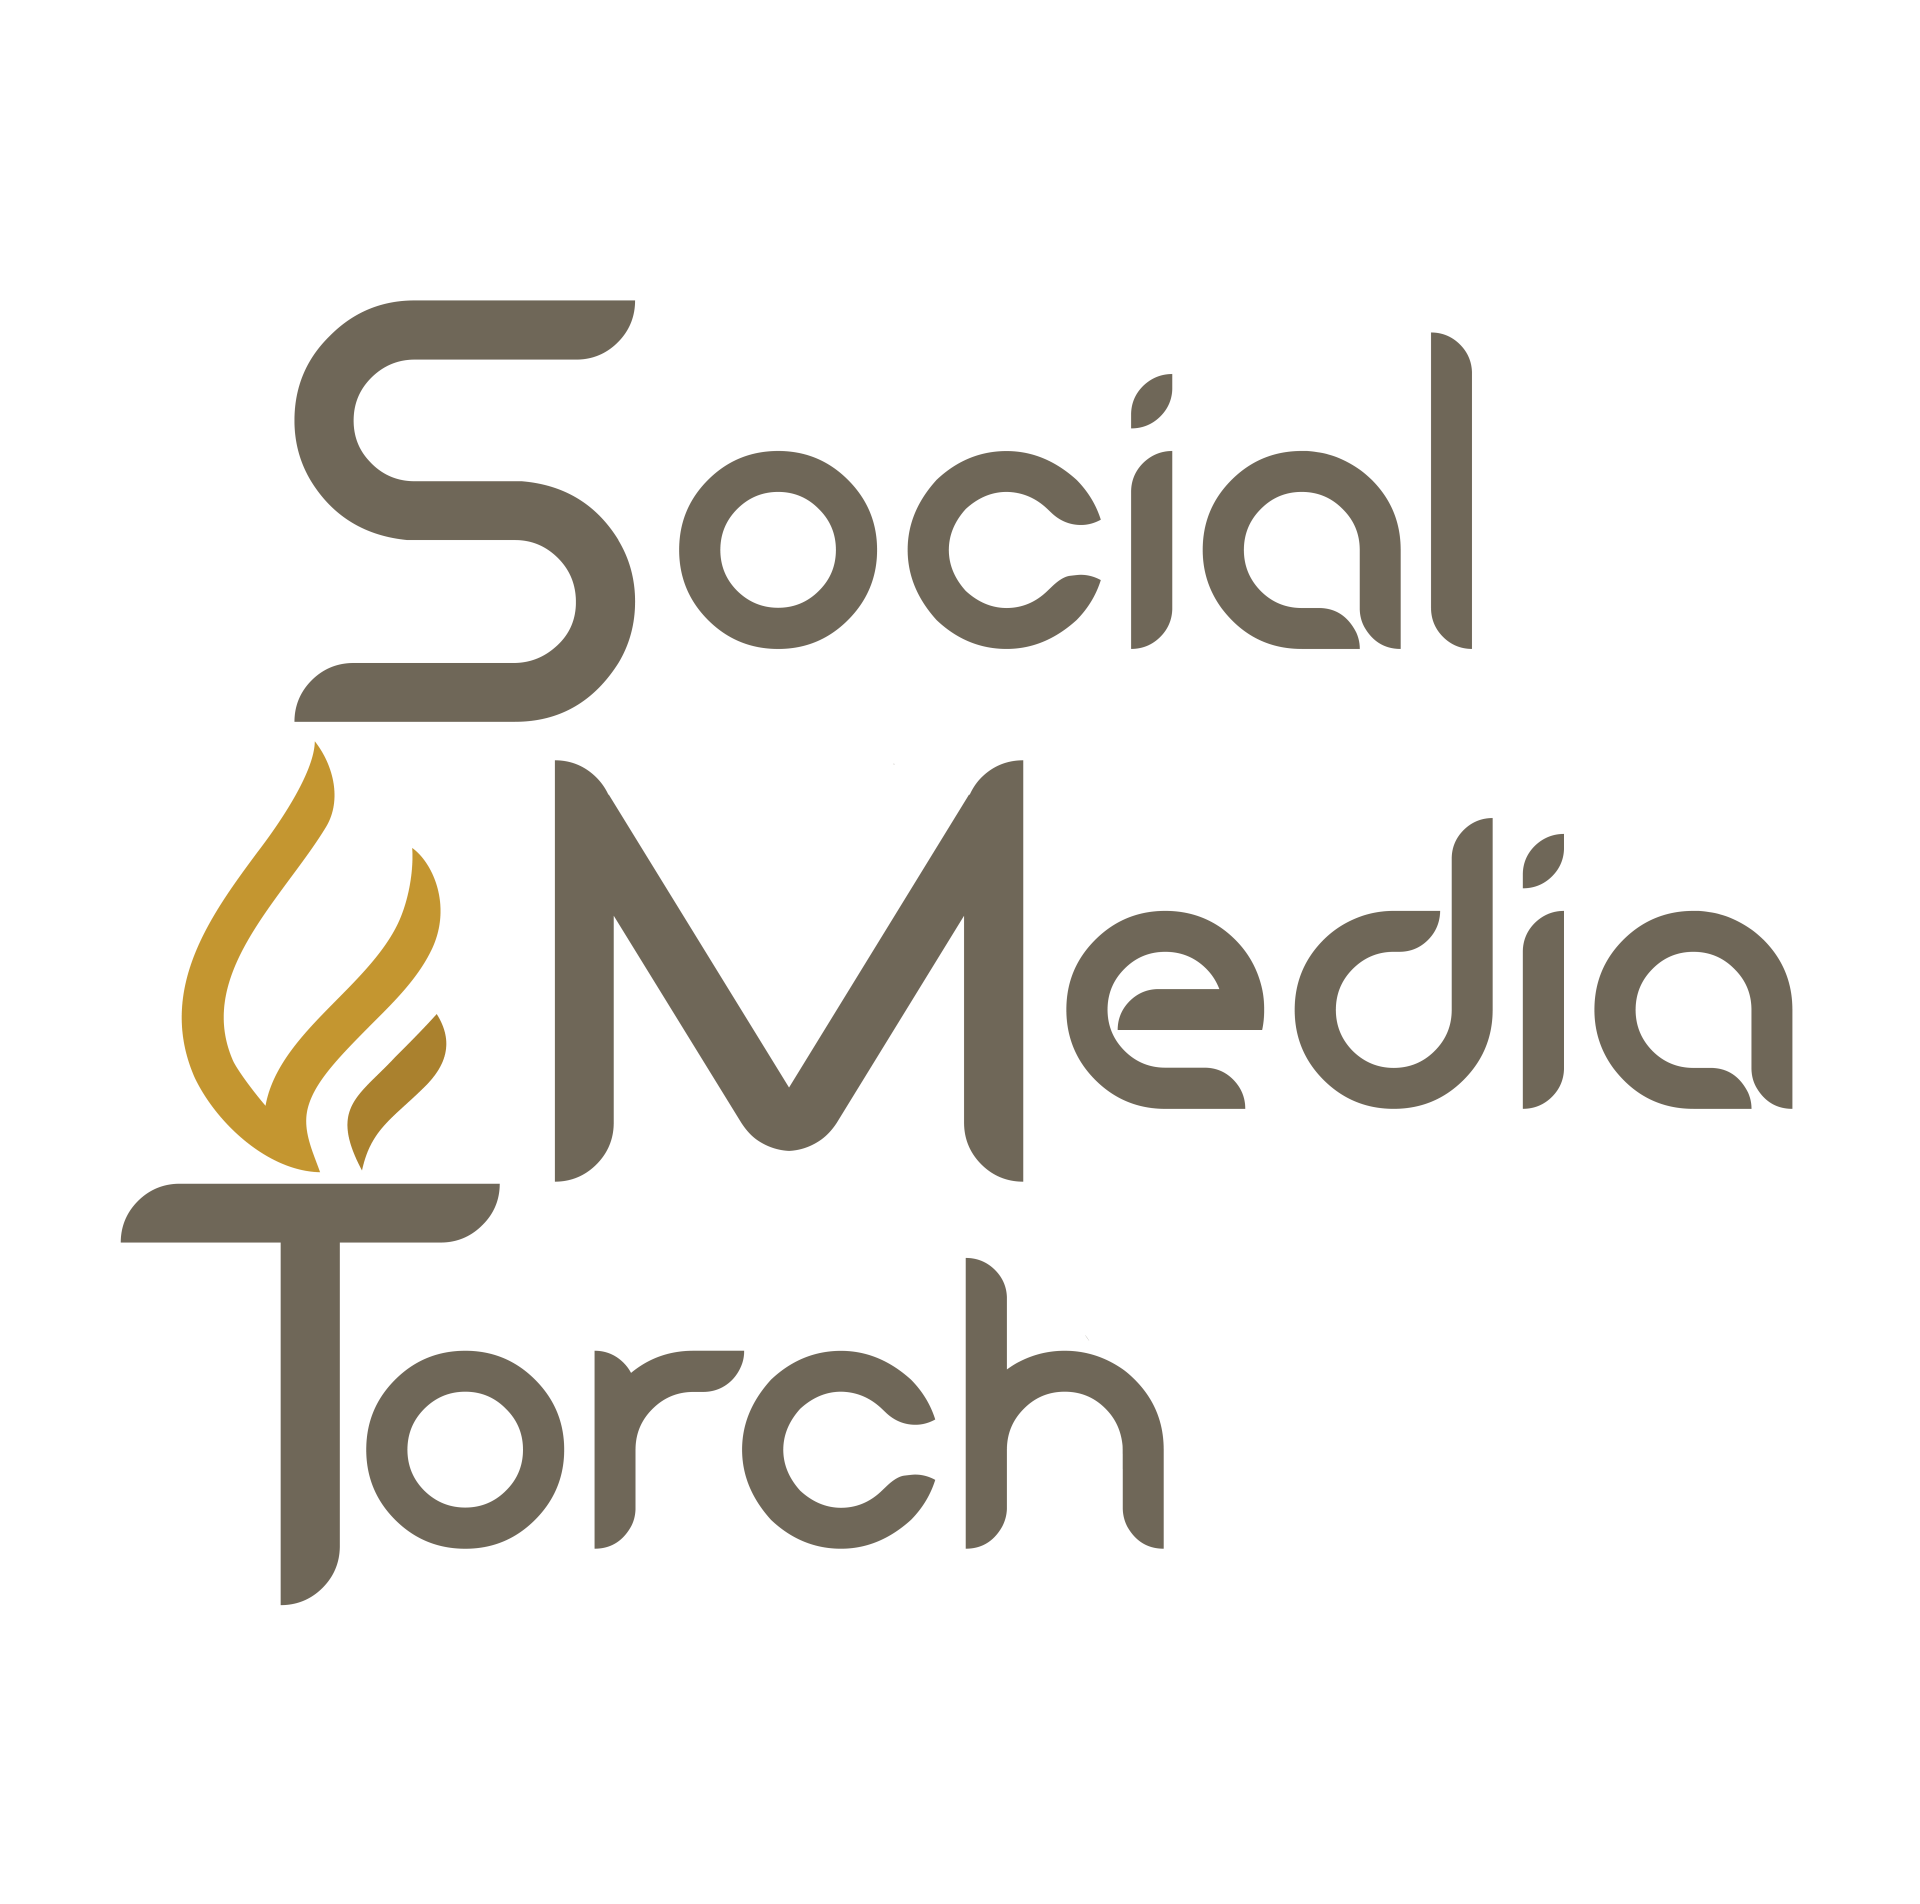 Social Media Torch Logo